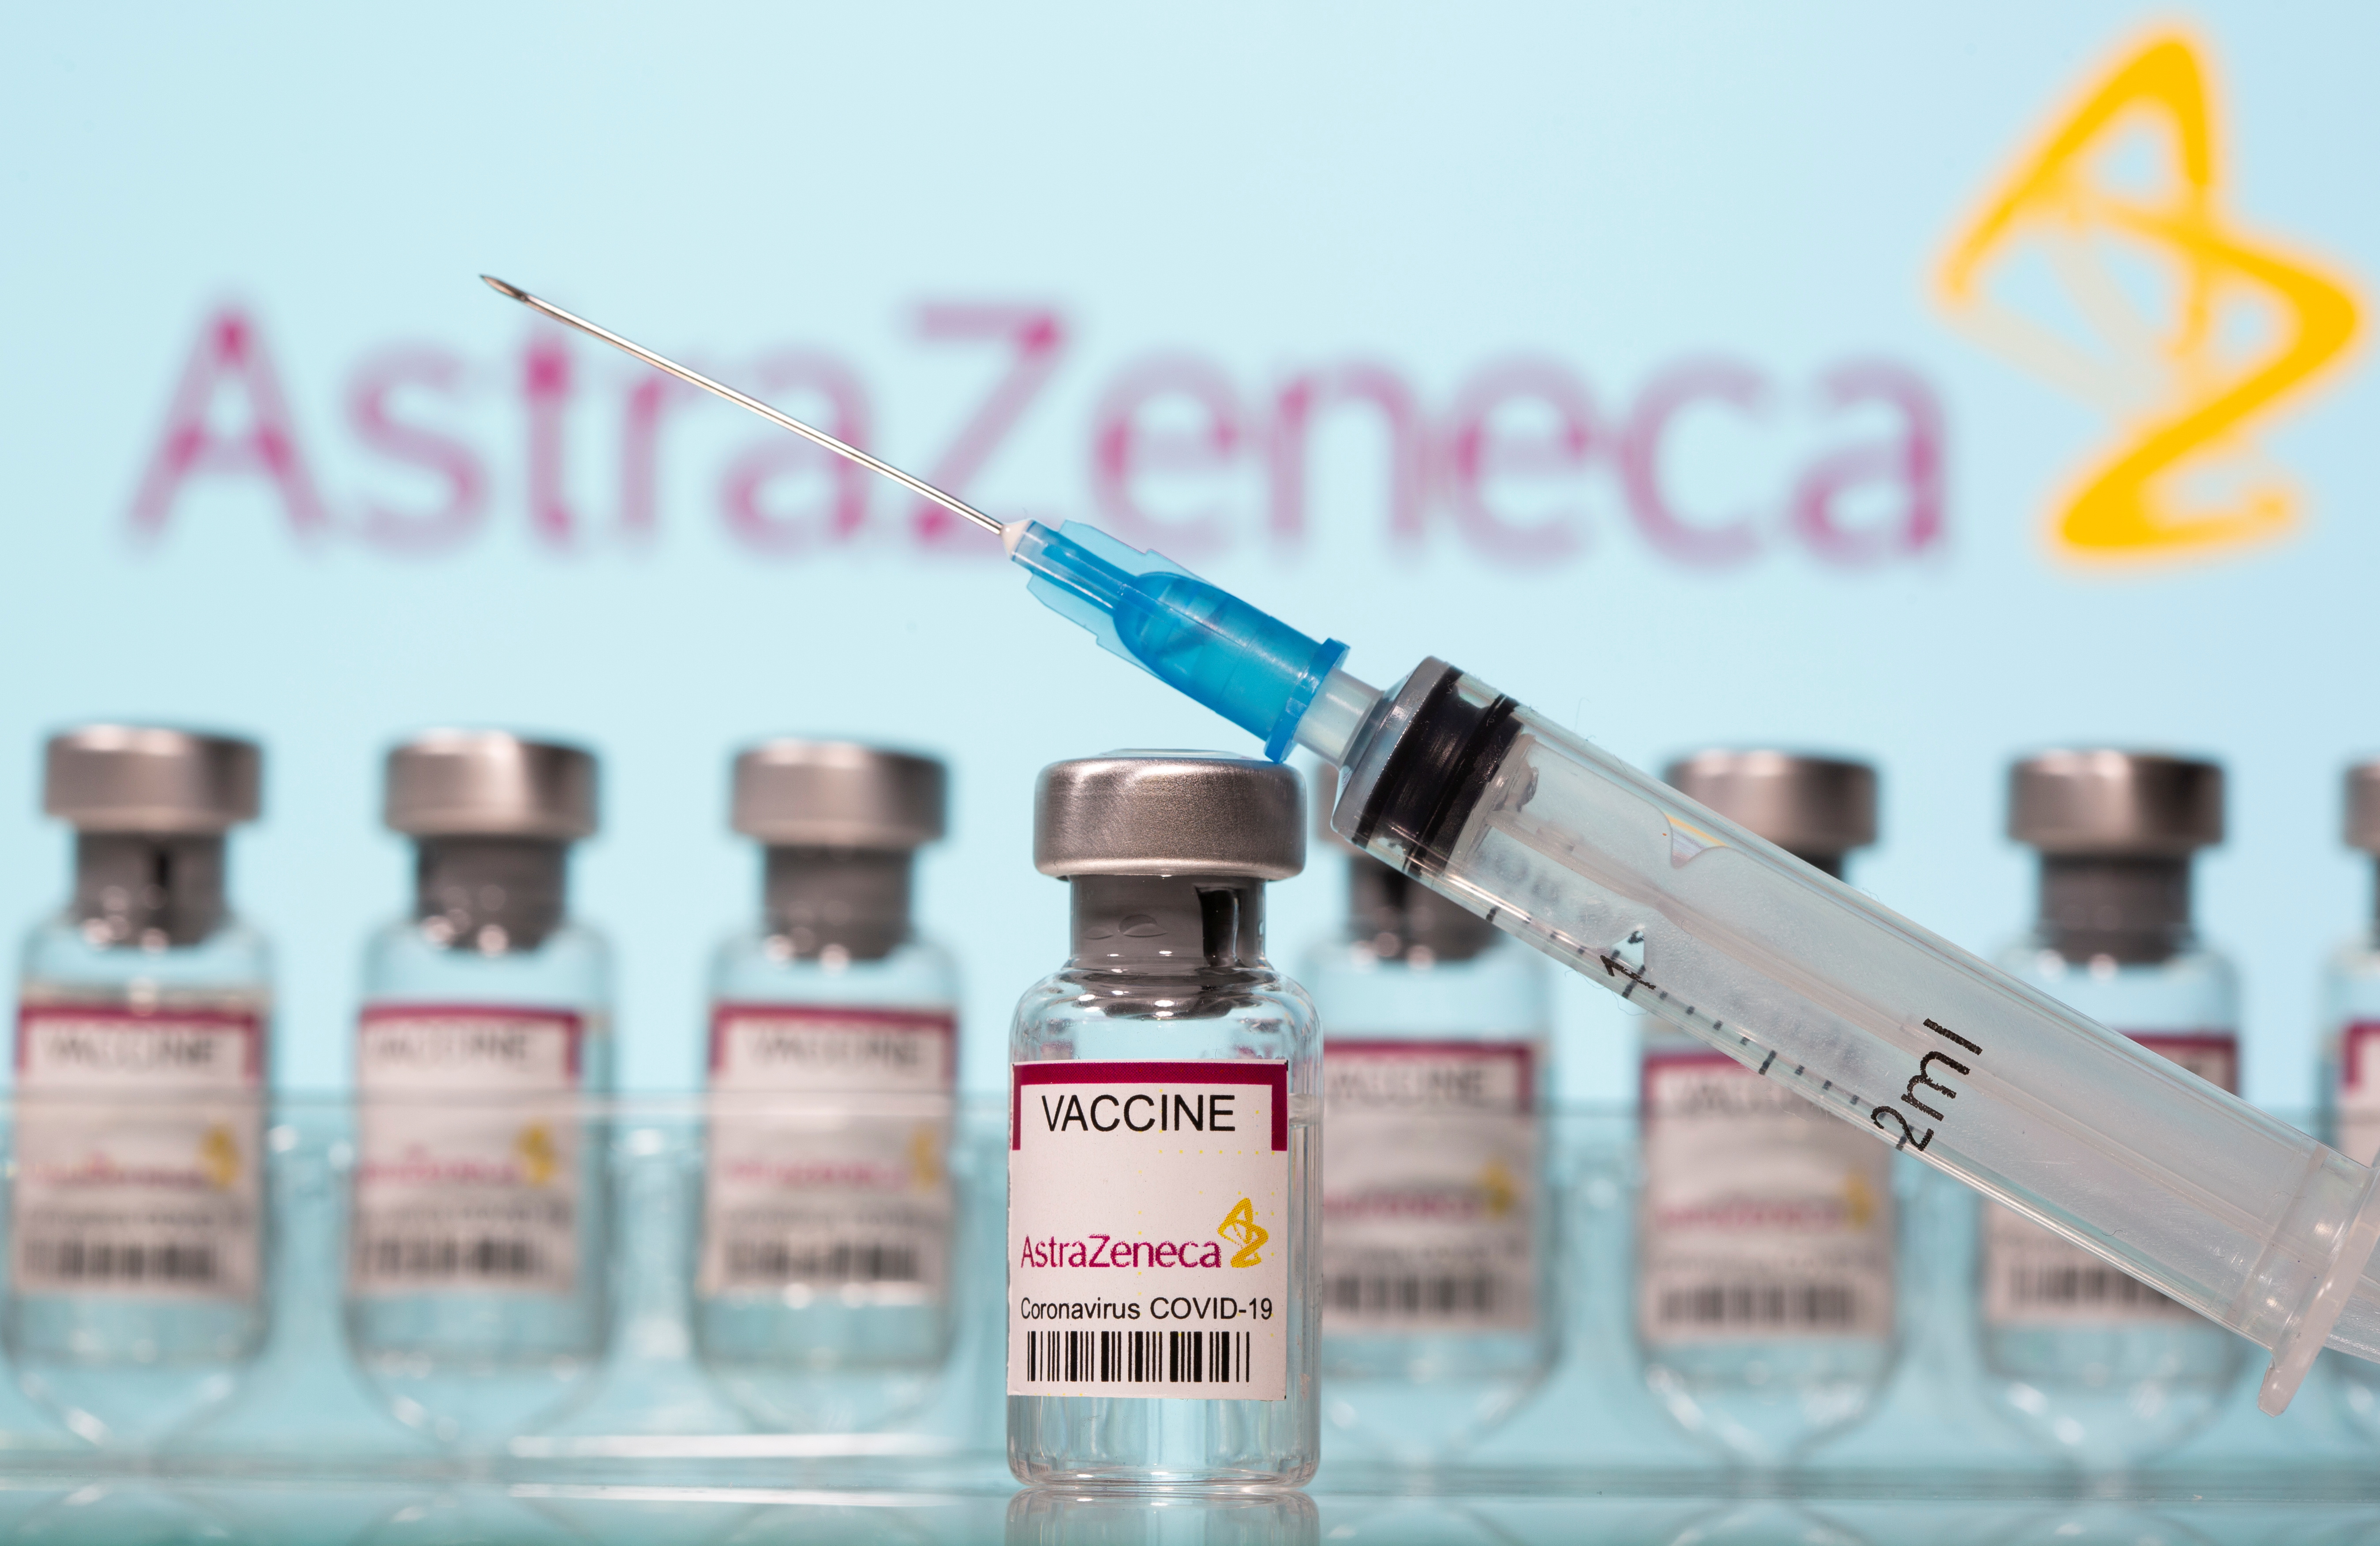 Is astrazeneca vaccine safe